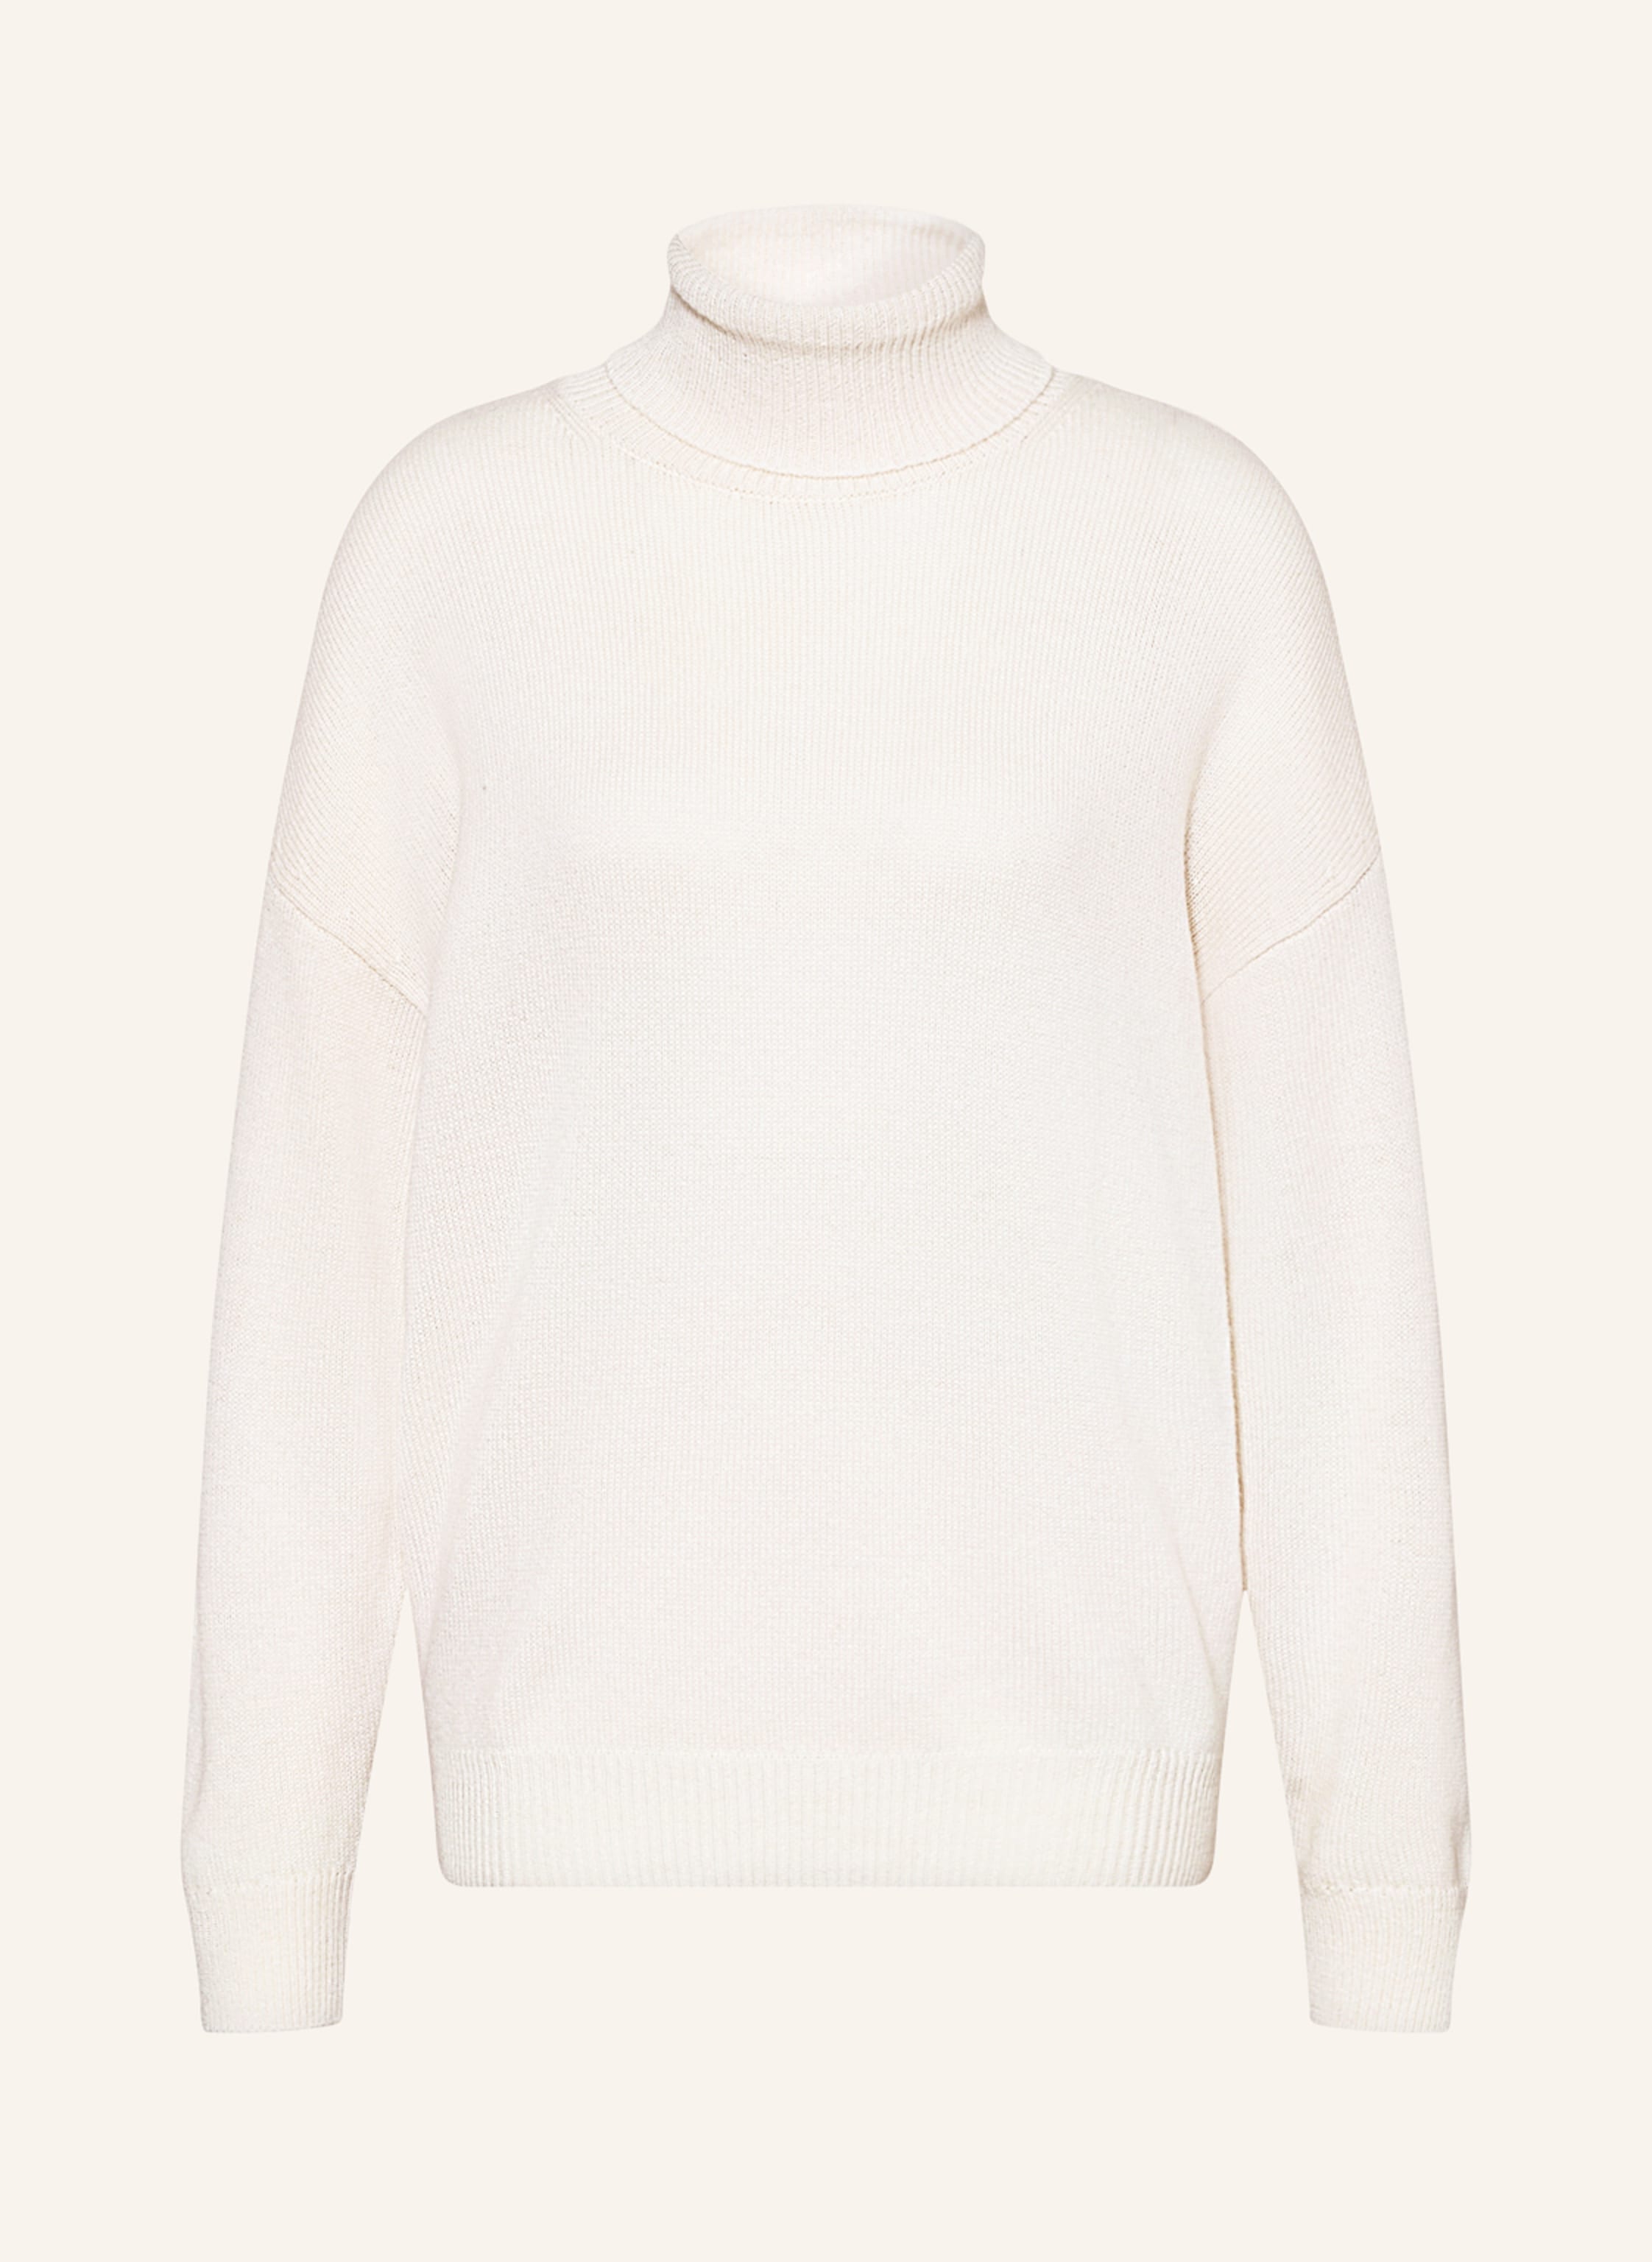 KUJTEN Turtleneck sweater TAMA in cream - Buy Online! | Breuninger